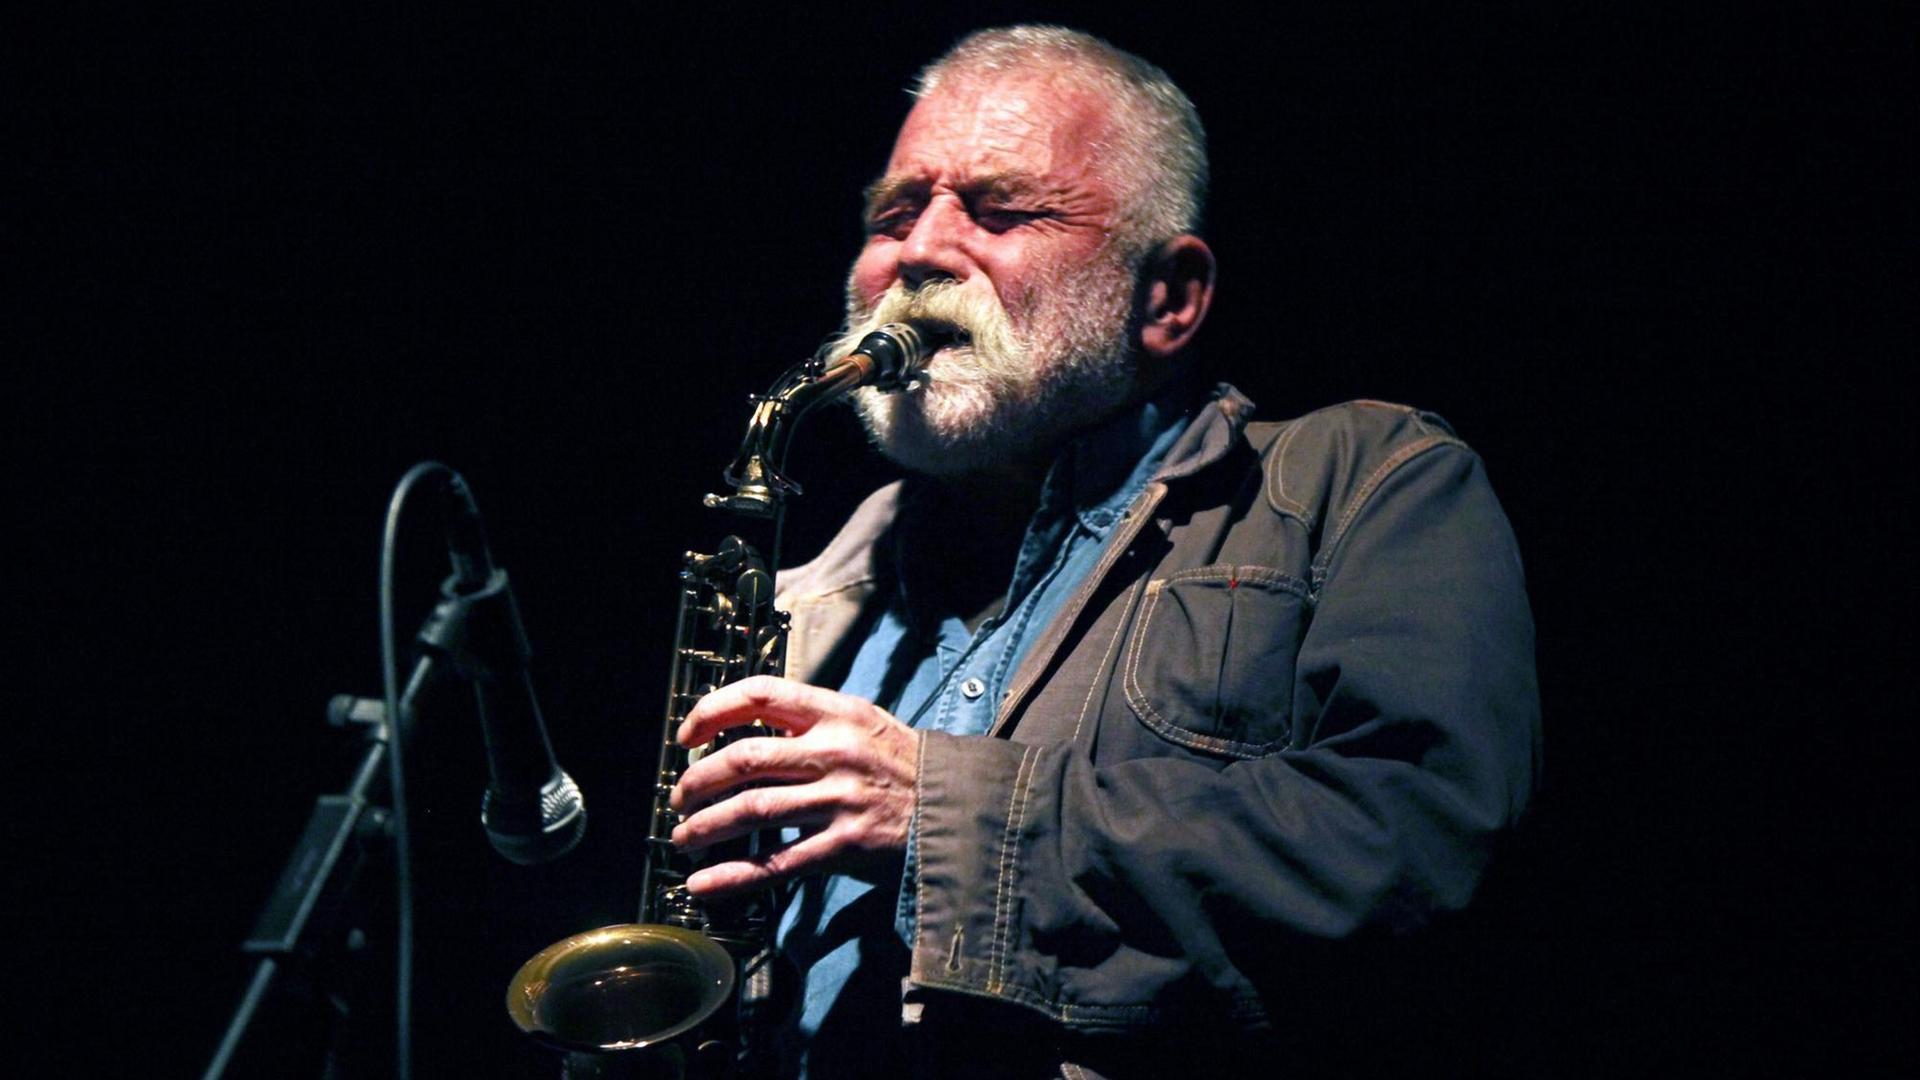 Jazzmusiker Peter Brötzmann spielt ein Saxophone auf einem Festival in Porto im Oktober 2012.